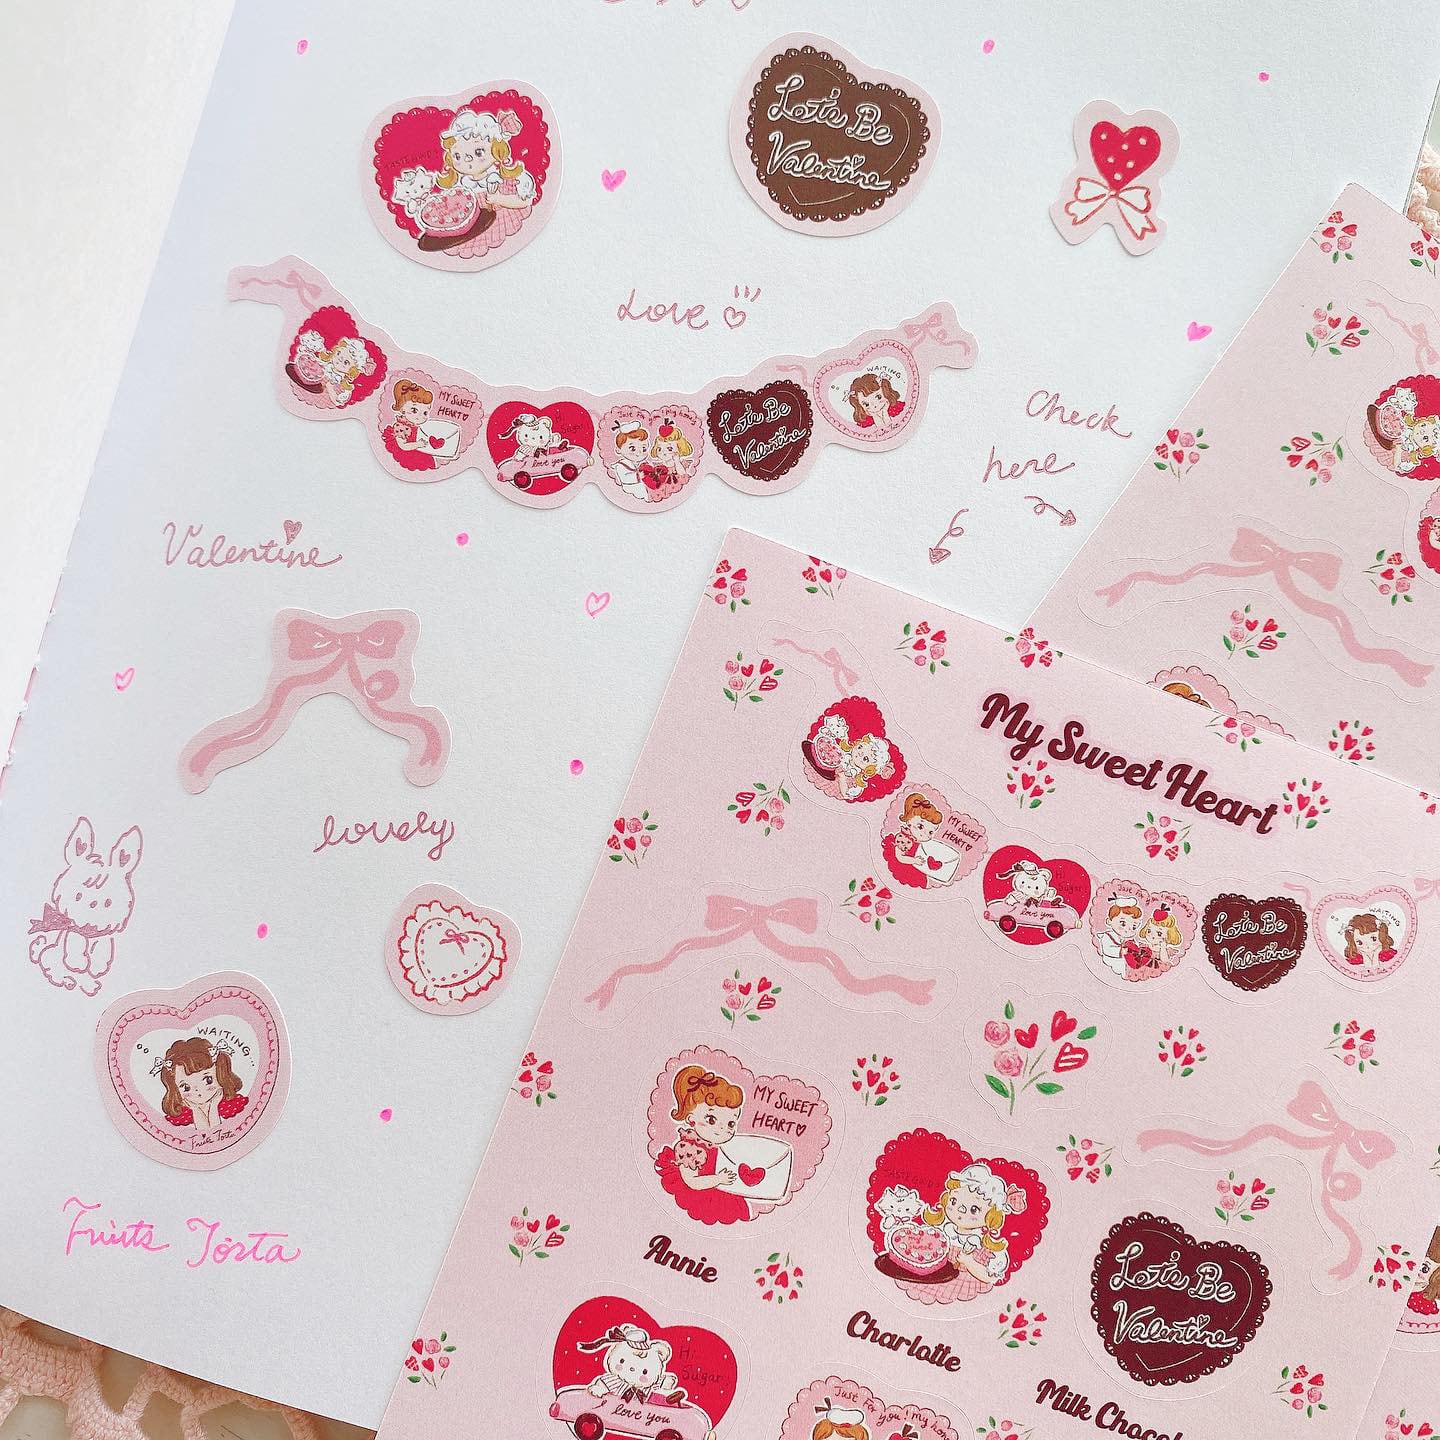 My Sweet Heart  multi sticker マルチステッカー